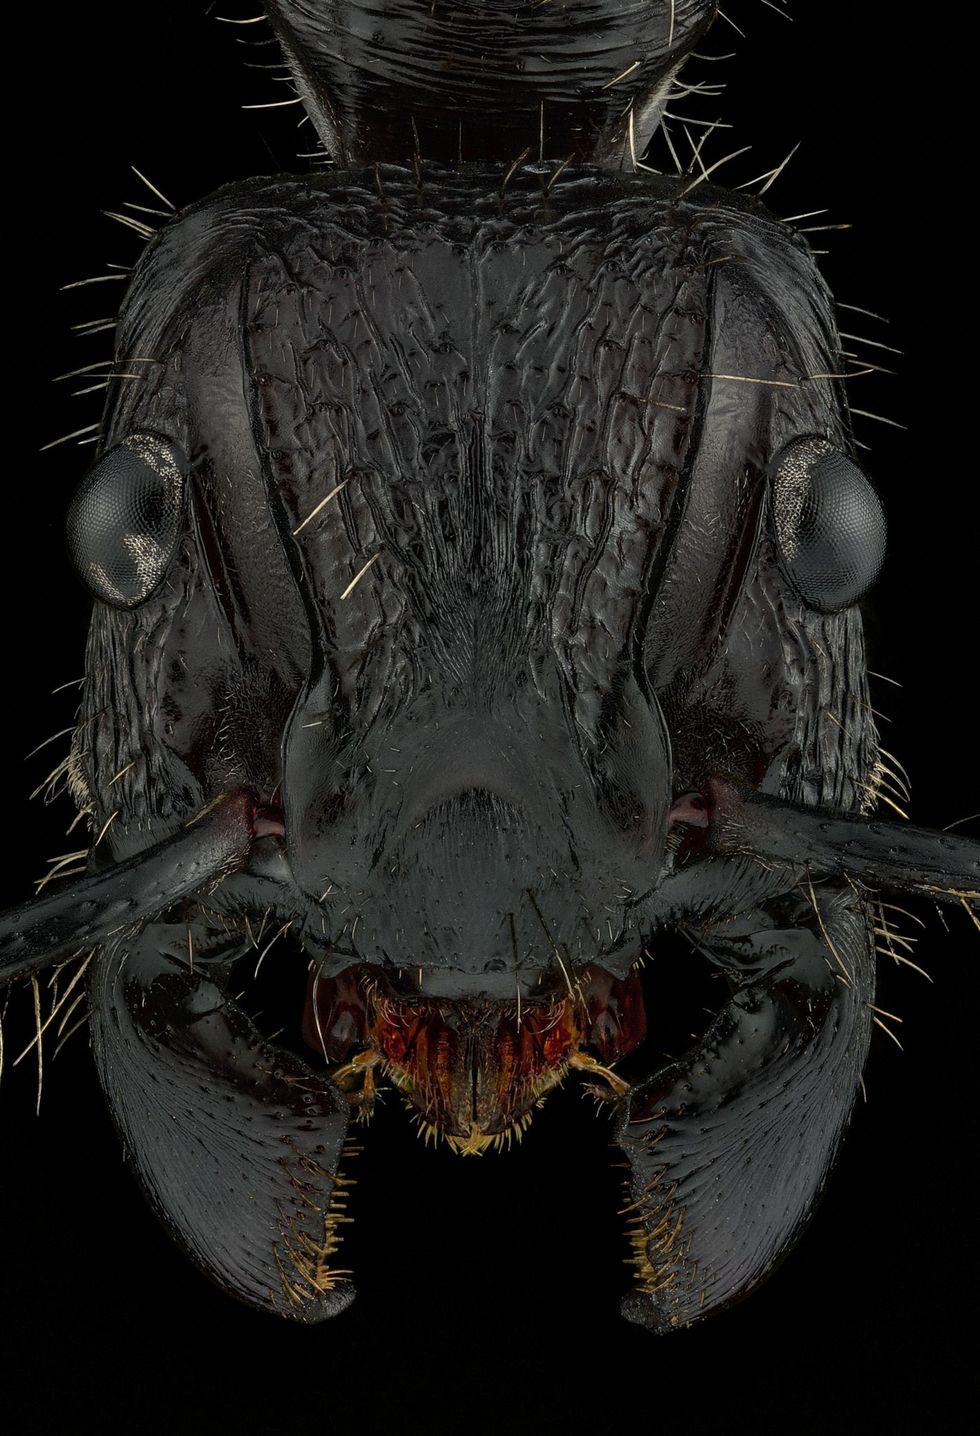 De mierenportretten van fotograaf Eduard Florin Niga tonen de gezichten van deze insecten in microscopische details Links is de kogelmier Paraponera clavata te zien die inheems is in LatijnsAmerika en een van de meest pijnlijke insectenbeten van het dierenrijk kan uitdelen